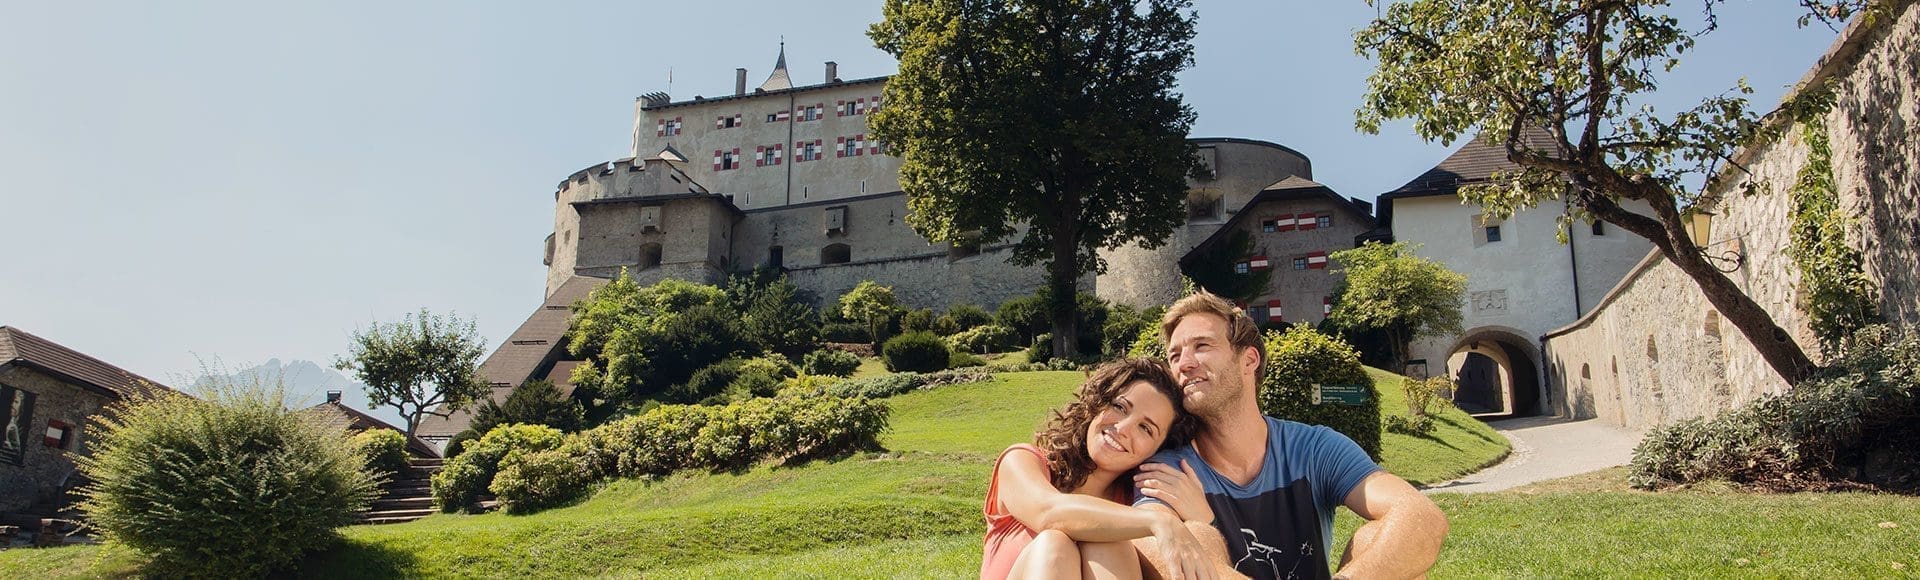 Burg Hohenwerfen Salzburger Land Tourismus Eva Trifft 1